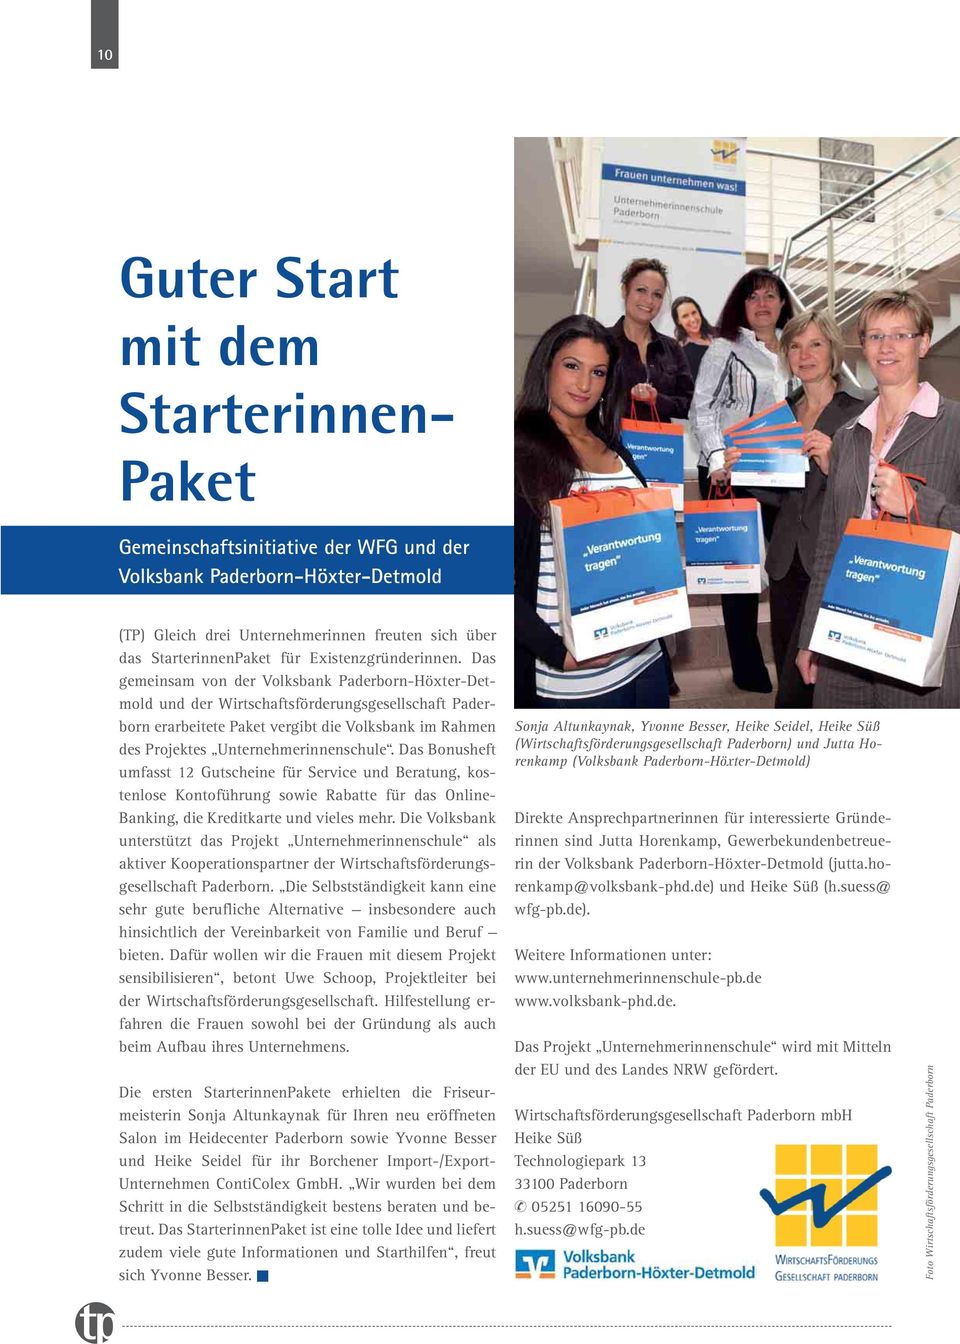 Das gemeinsam von der Volksbank Paderborn-Höxter-Detmold und der Wirtschaftsförderungsgesellschaft Paderborn erarbeitete Paket vergibt die Volksbank im Rahmen des Projektes Unternehmerinnenschule.